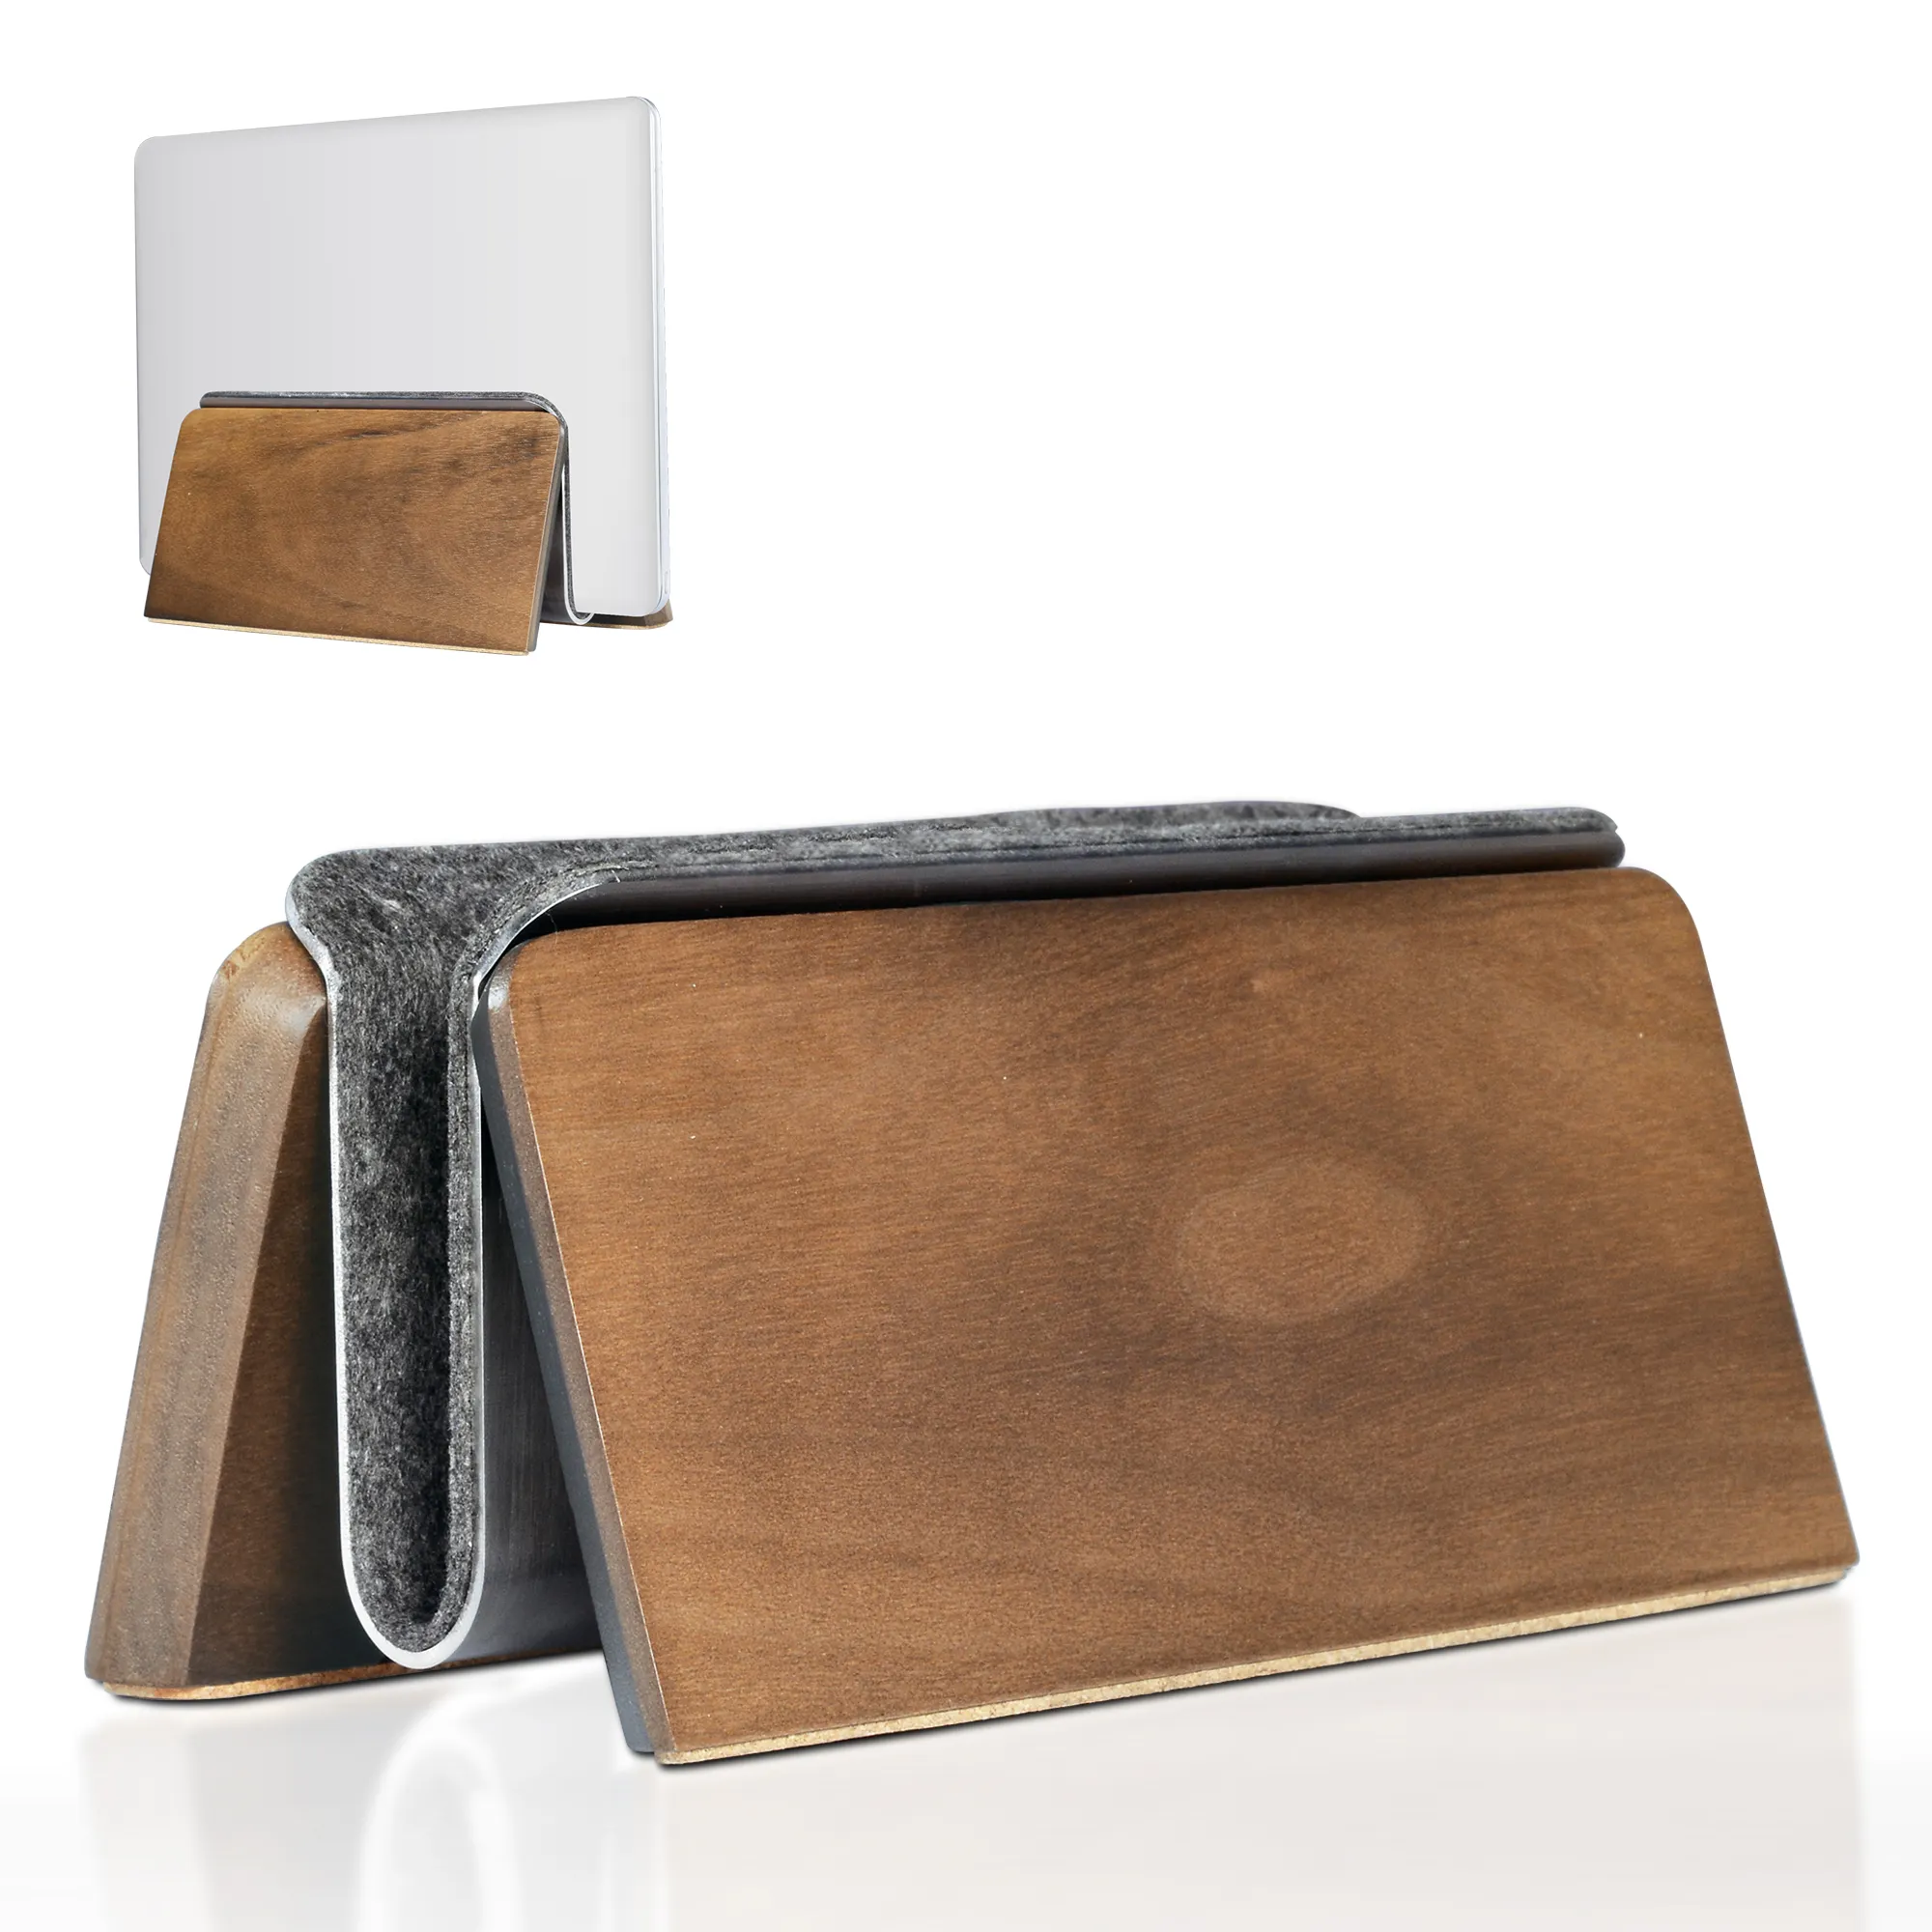 SAMDI новая деревянная вертикальная подставка для ноутбука деревянная подставка для ноутбука универсальная вертикальная подставка для ноутбука